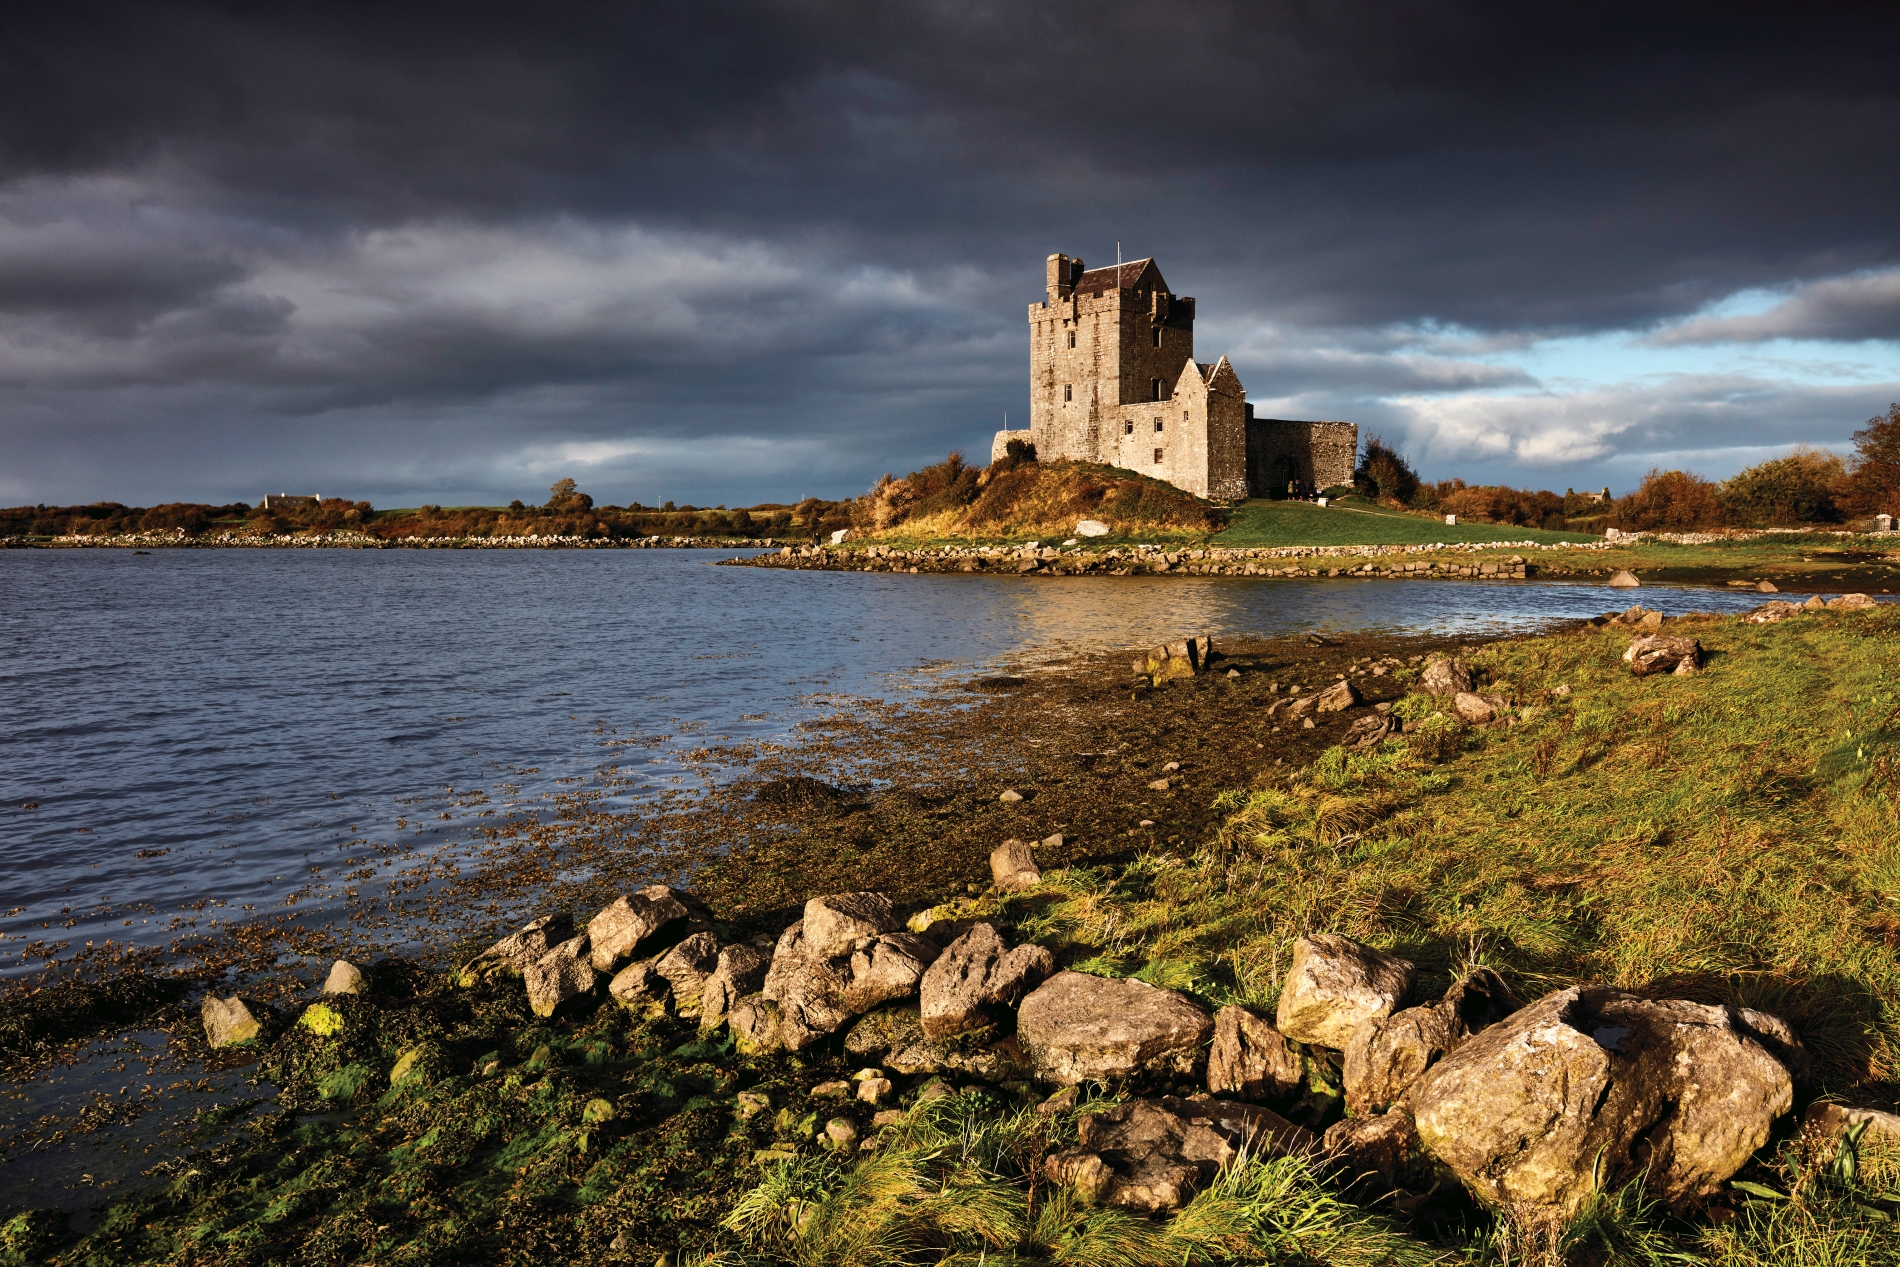 blick auf eine mittelalterliche burg in irland direkt am wasser mit dunkel bewölktem himmel